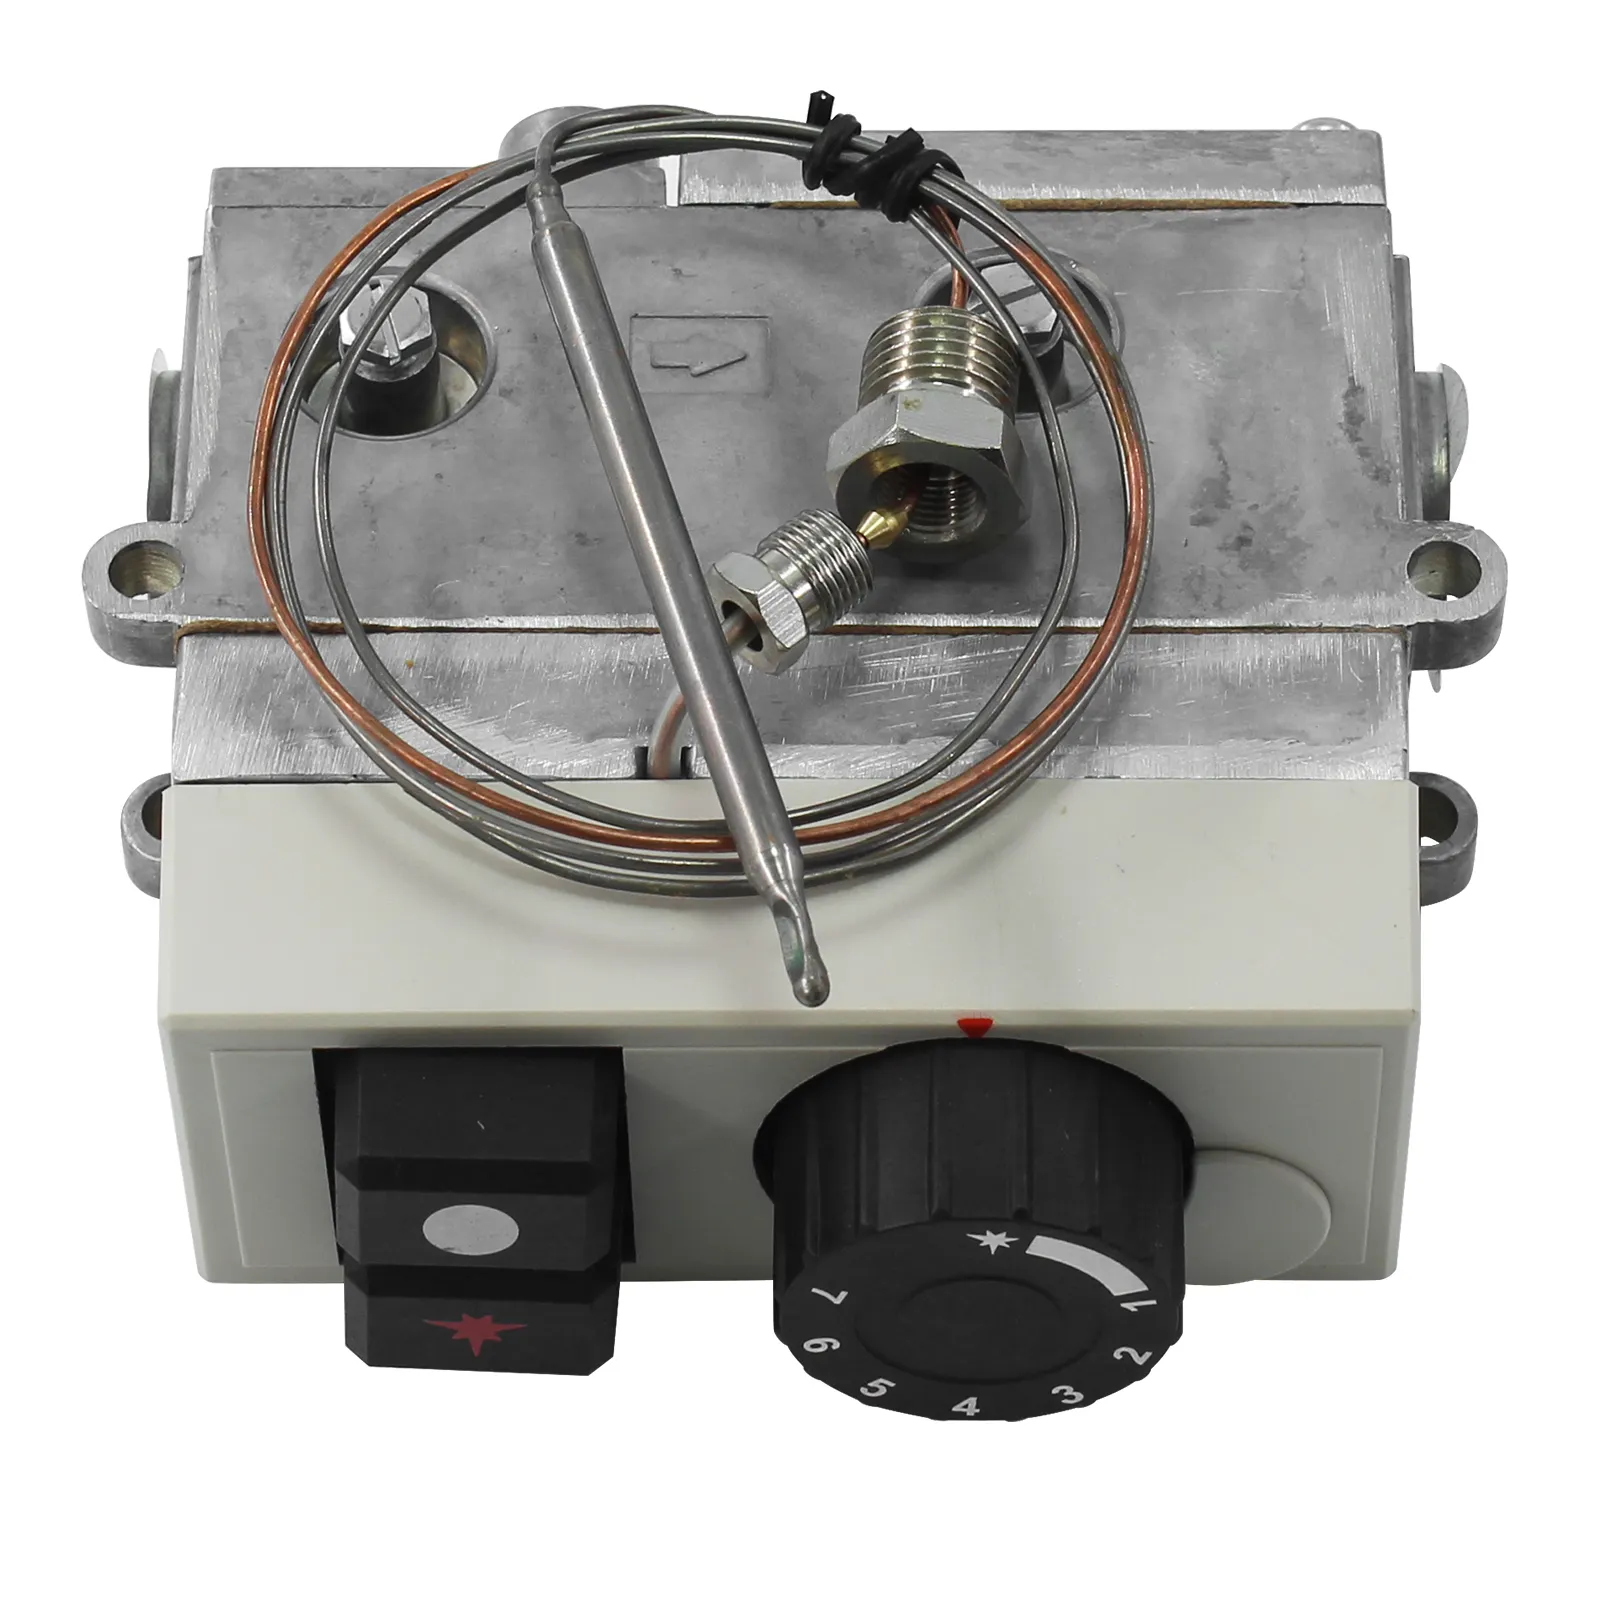 Vanne de commande de thermostat de gaz propane, modèle 710 vanne de commande de thermostat de friteuse à gaz minisit